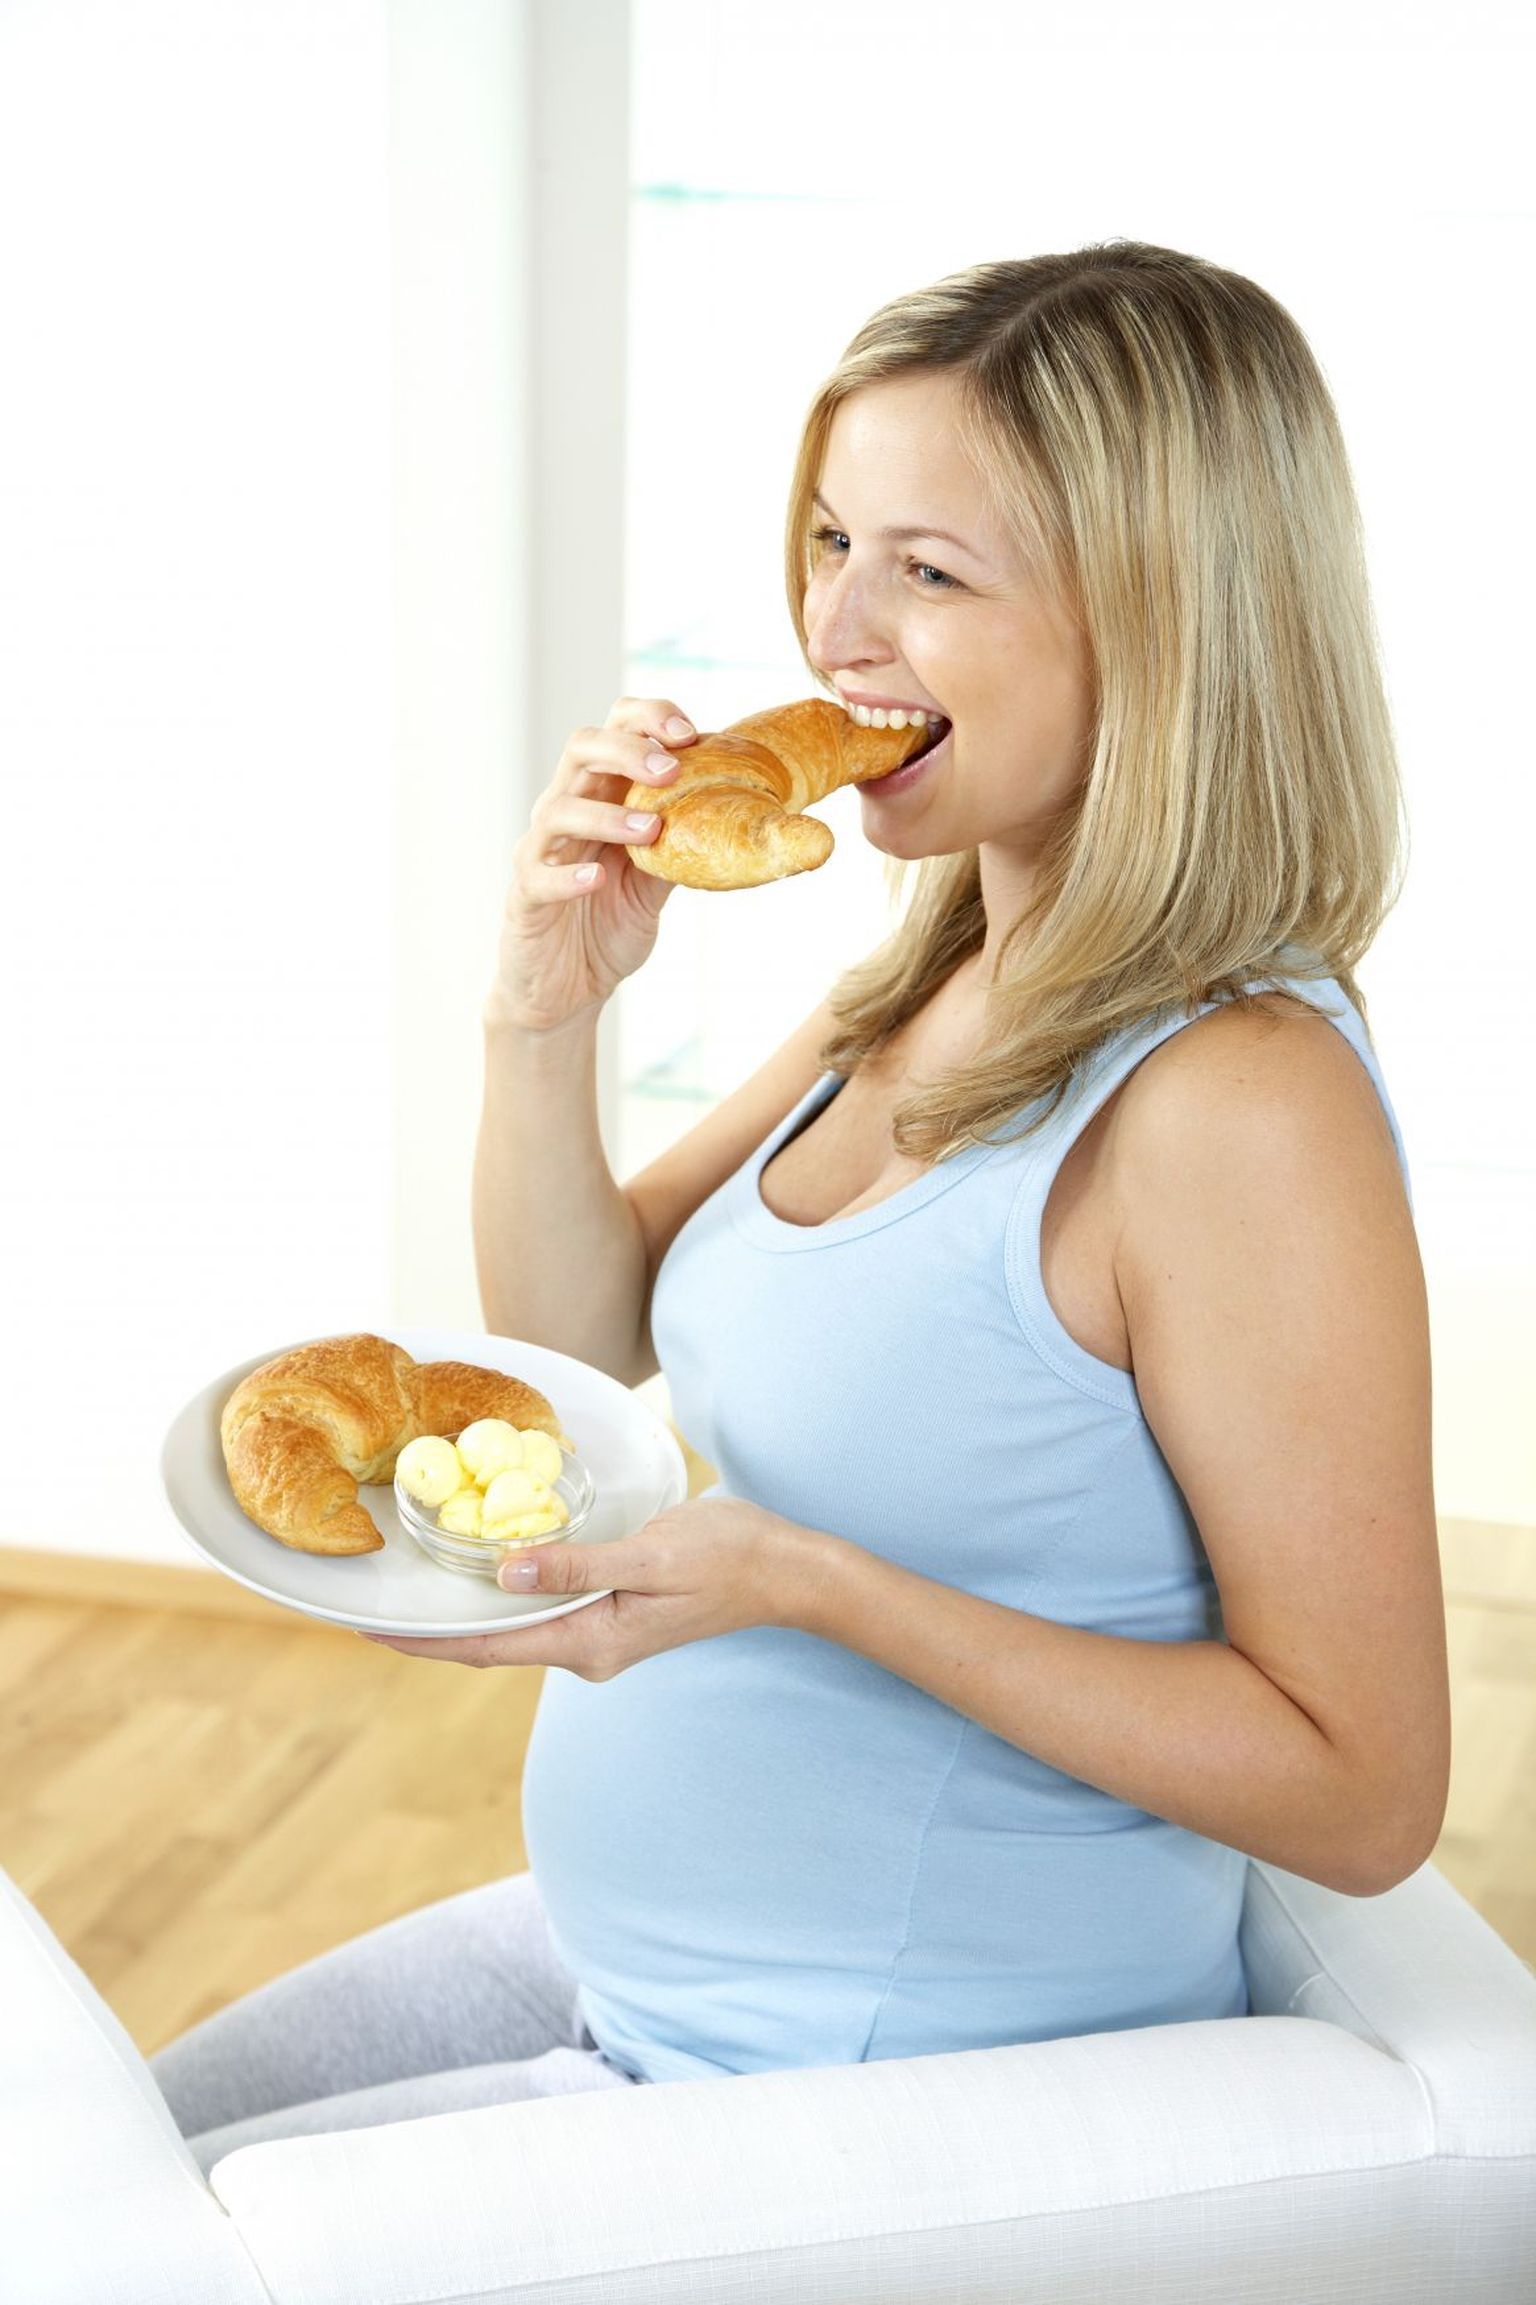 Ka raseduse ajal ei pea sööma kahe eest